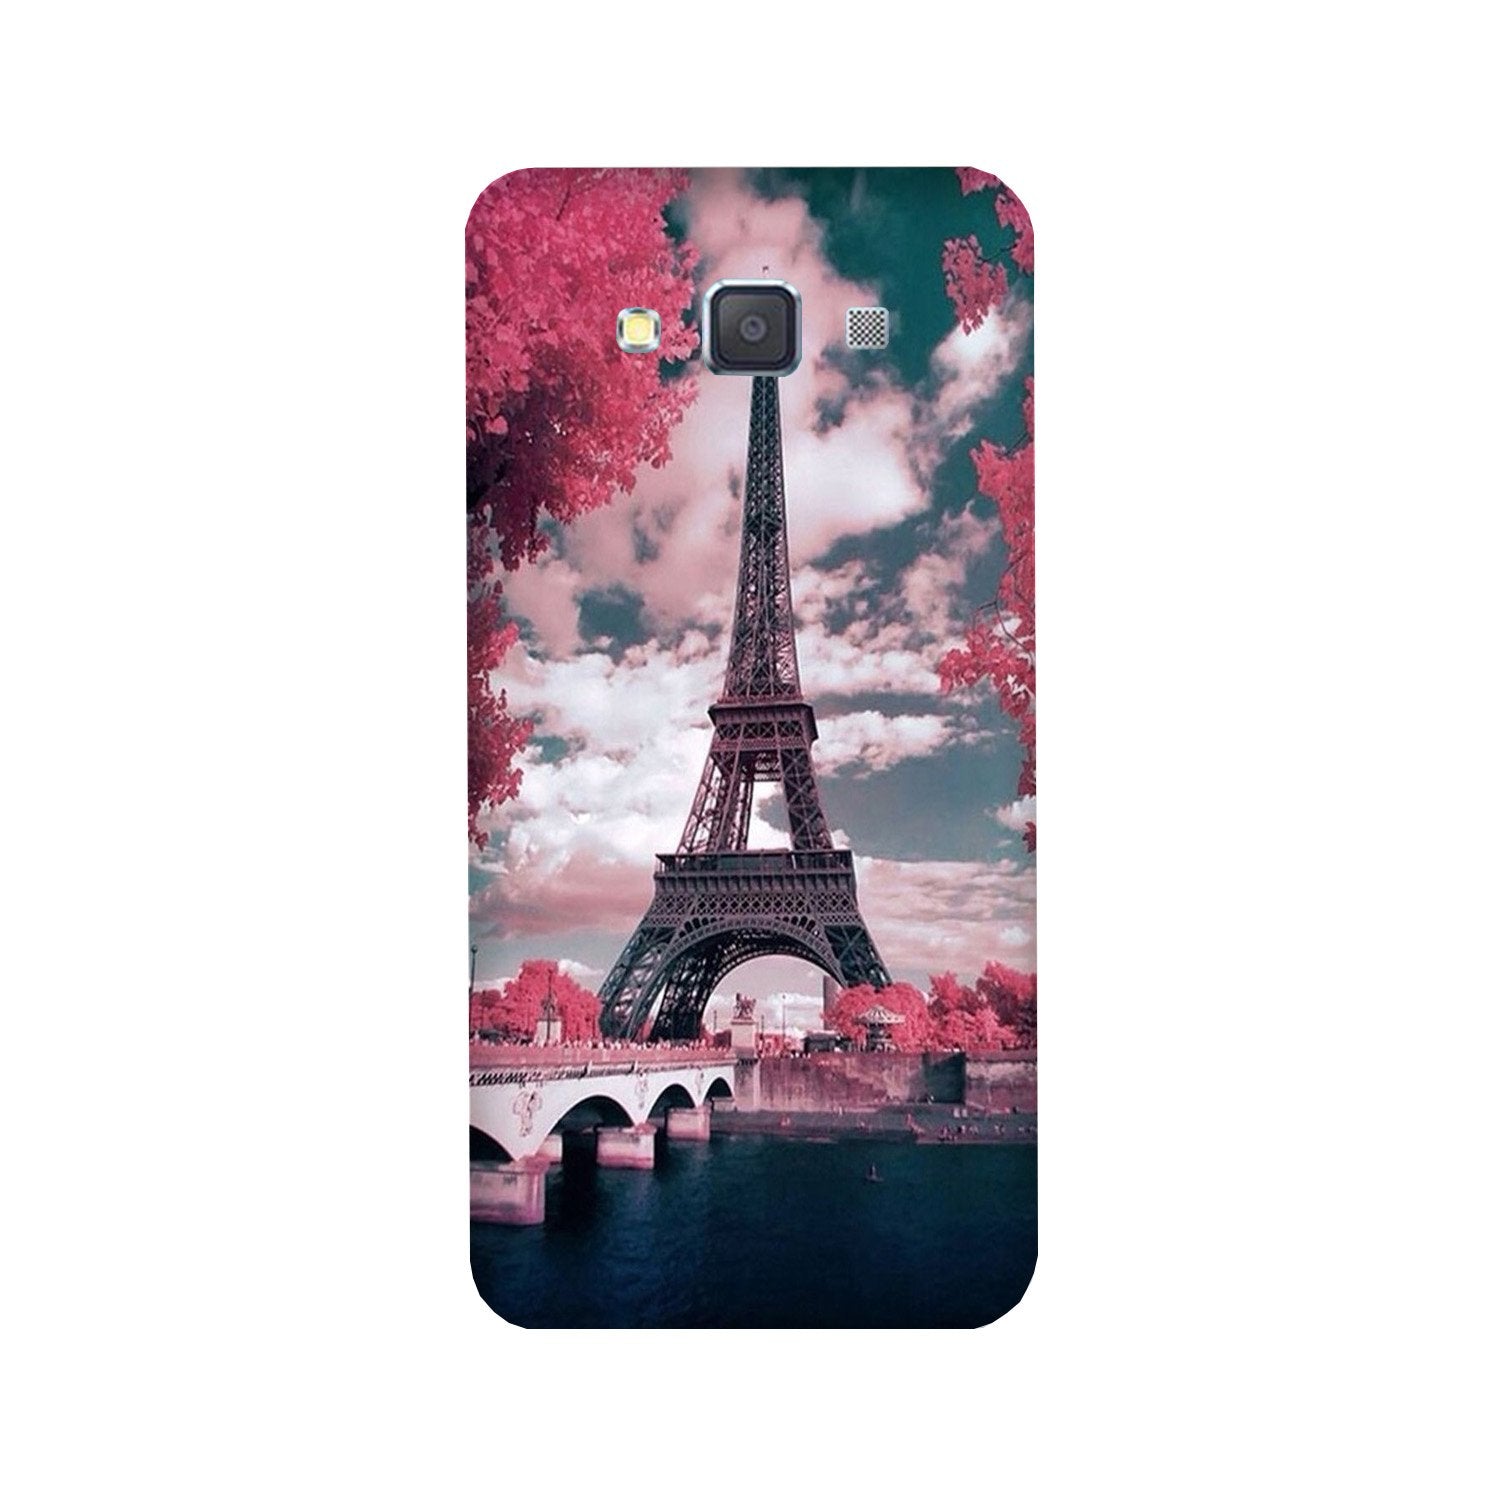 Eiffel Tower Case for Galaxy J7 (2016)(Design - 101)